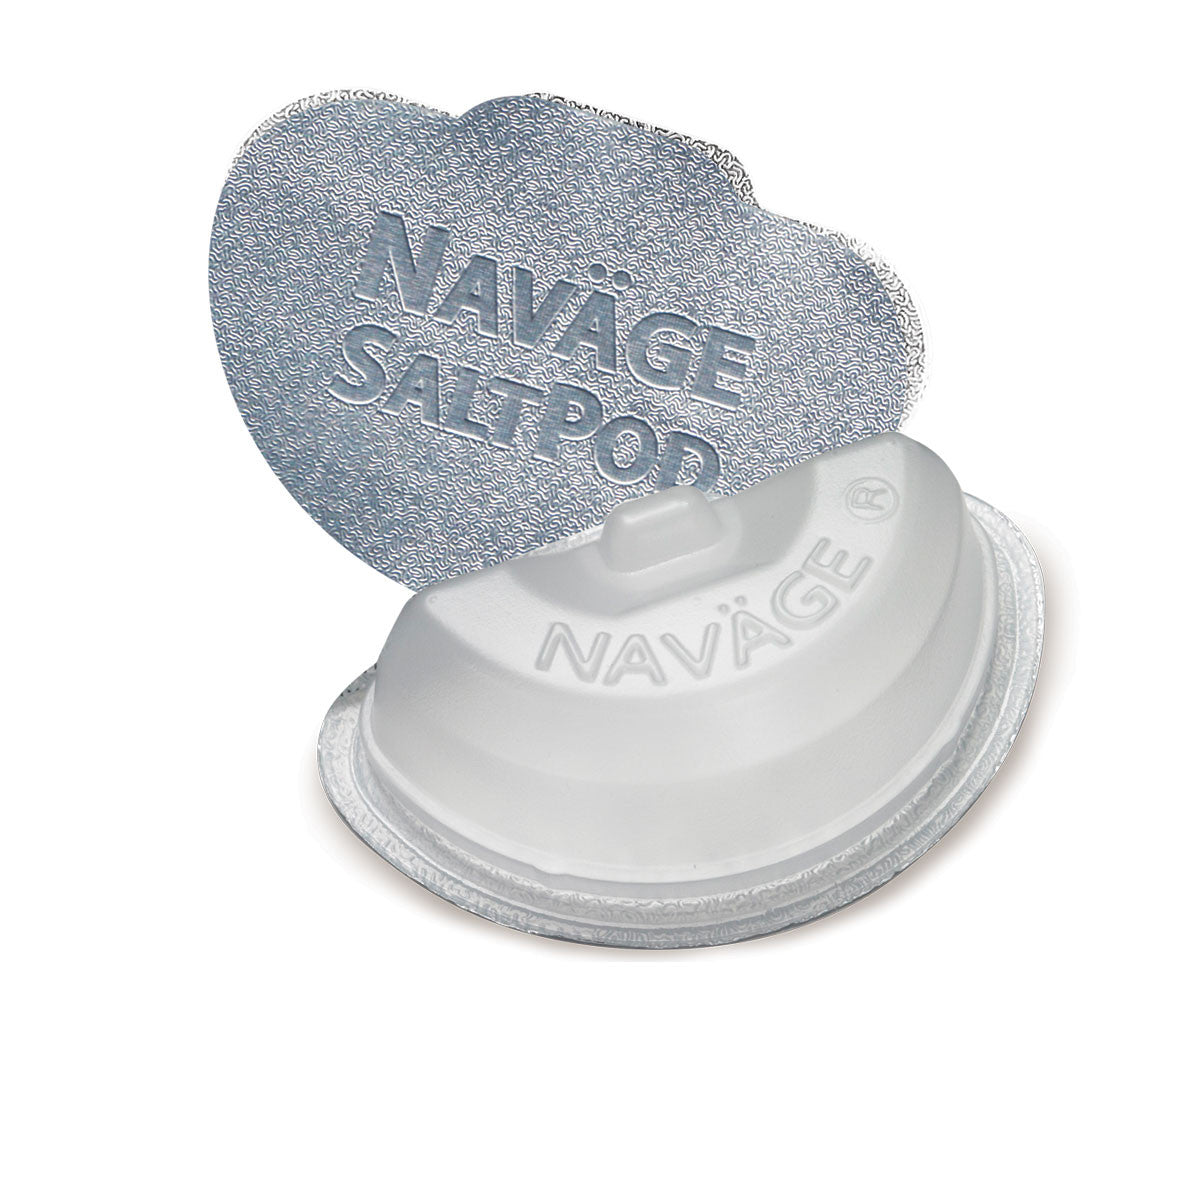 Ensemble multi-utilisateurs Navage : nettoyant pour le nez, 20 capsules SaltPod, 2e station d'accueil nasale, 2e paire d'oreillers nasaux